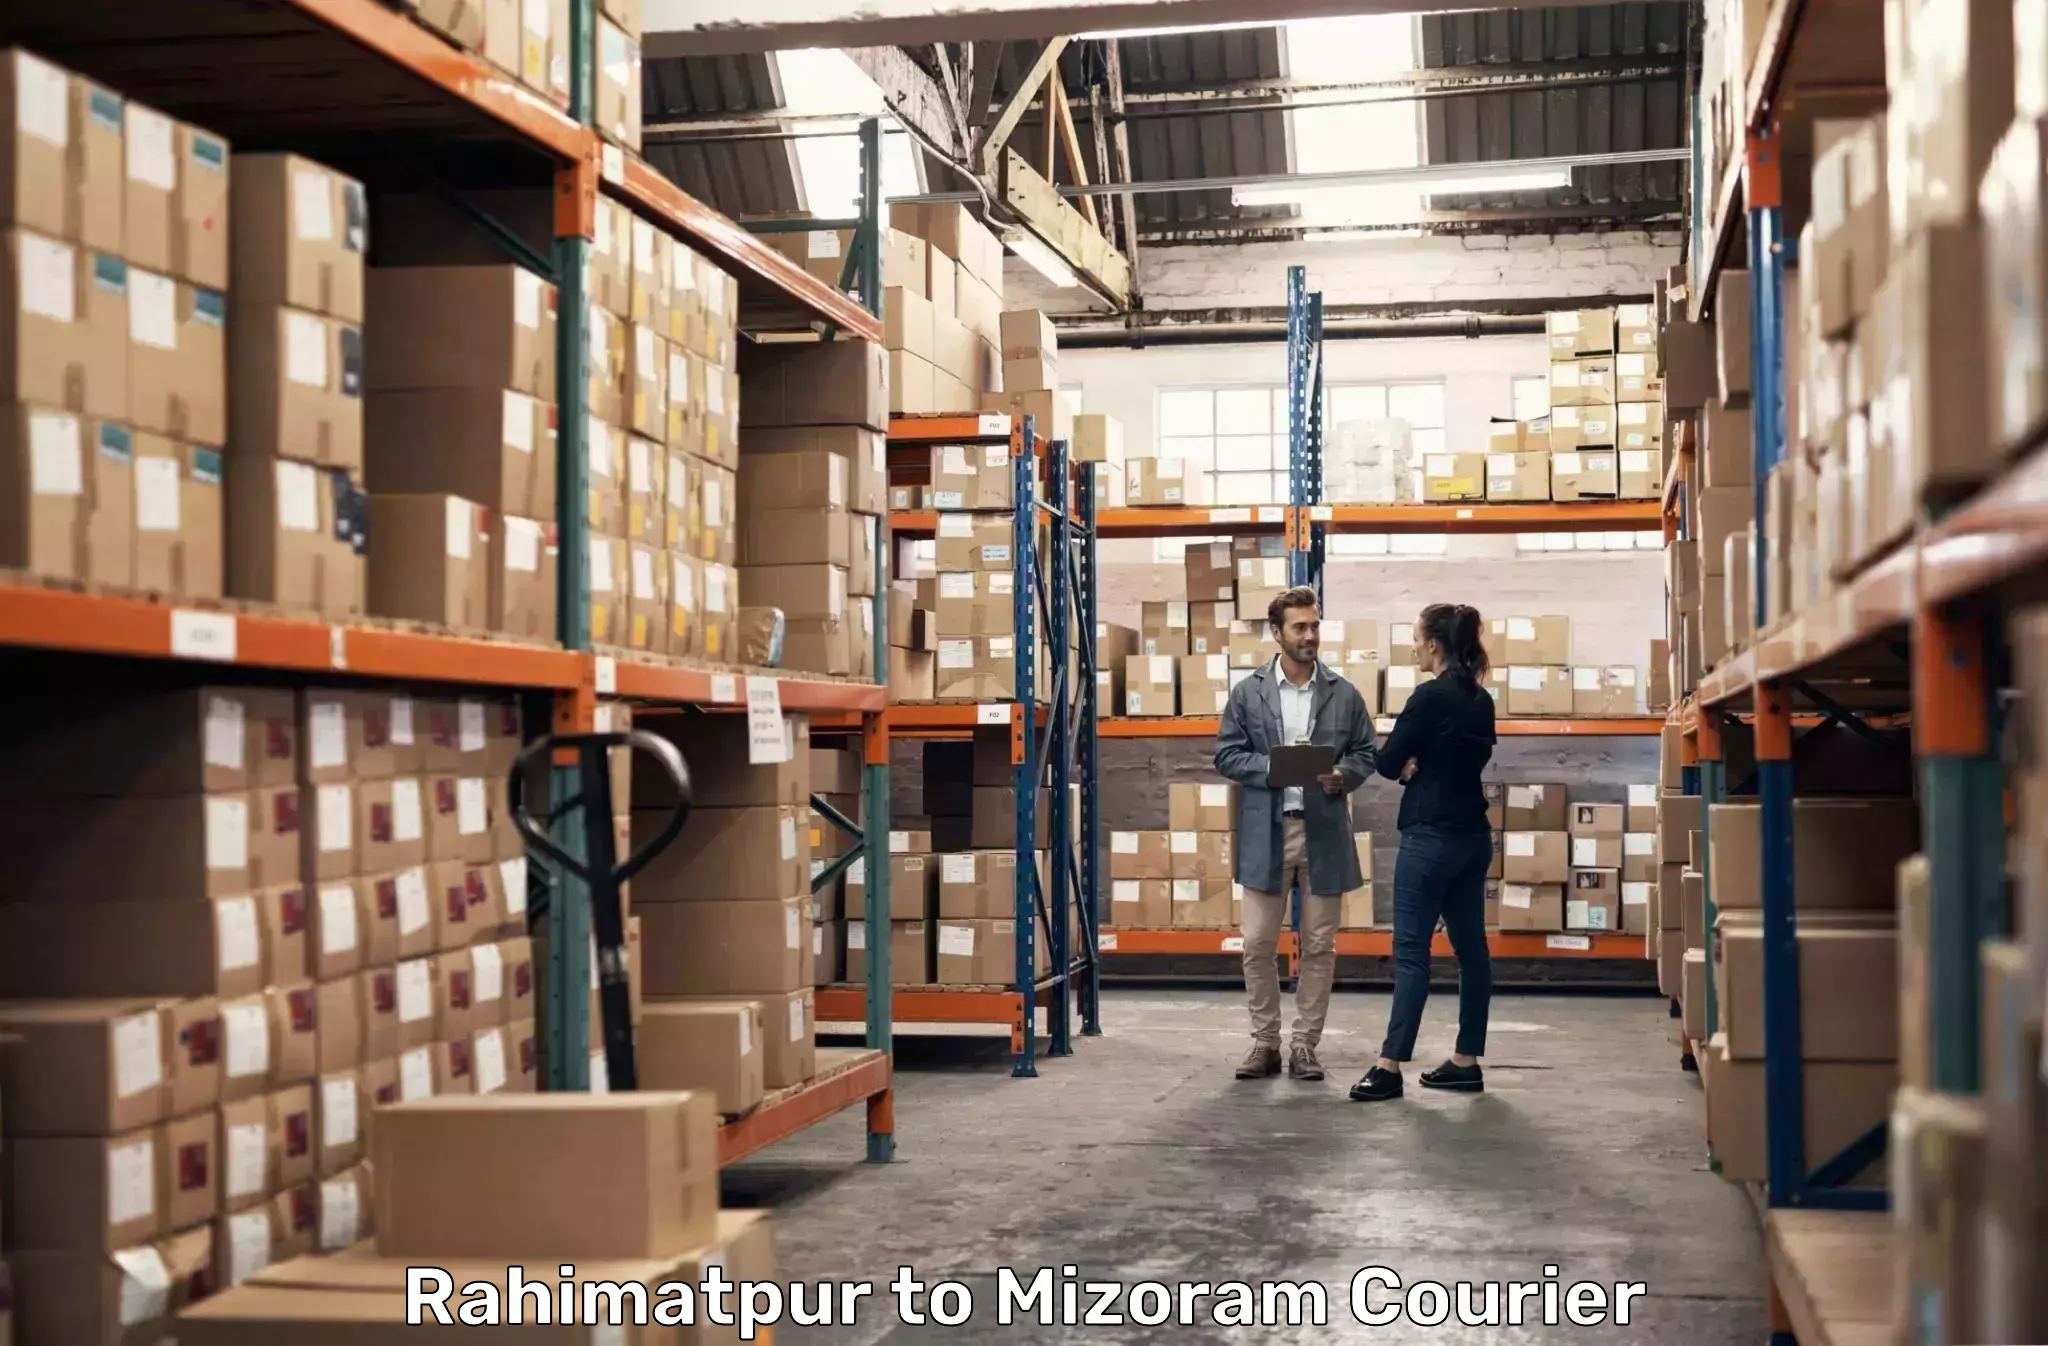 Urgent courier needs Rahimatpur to Khawzawl